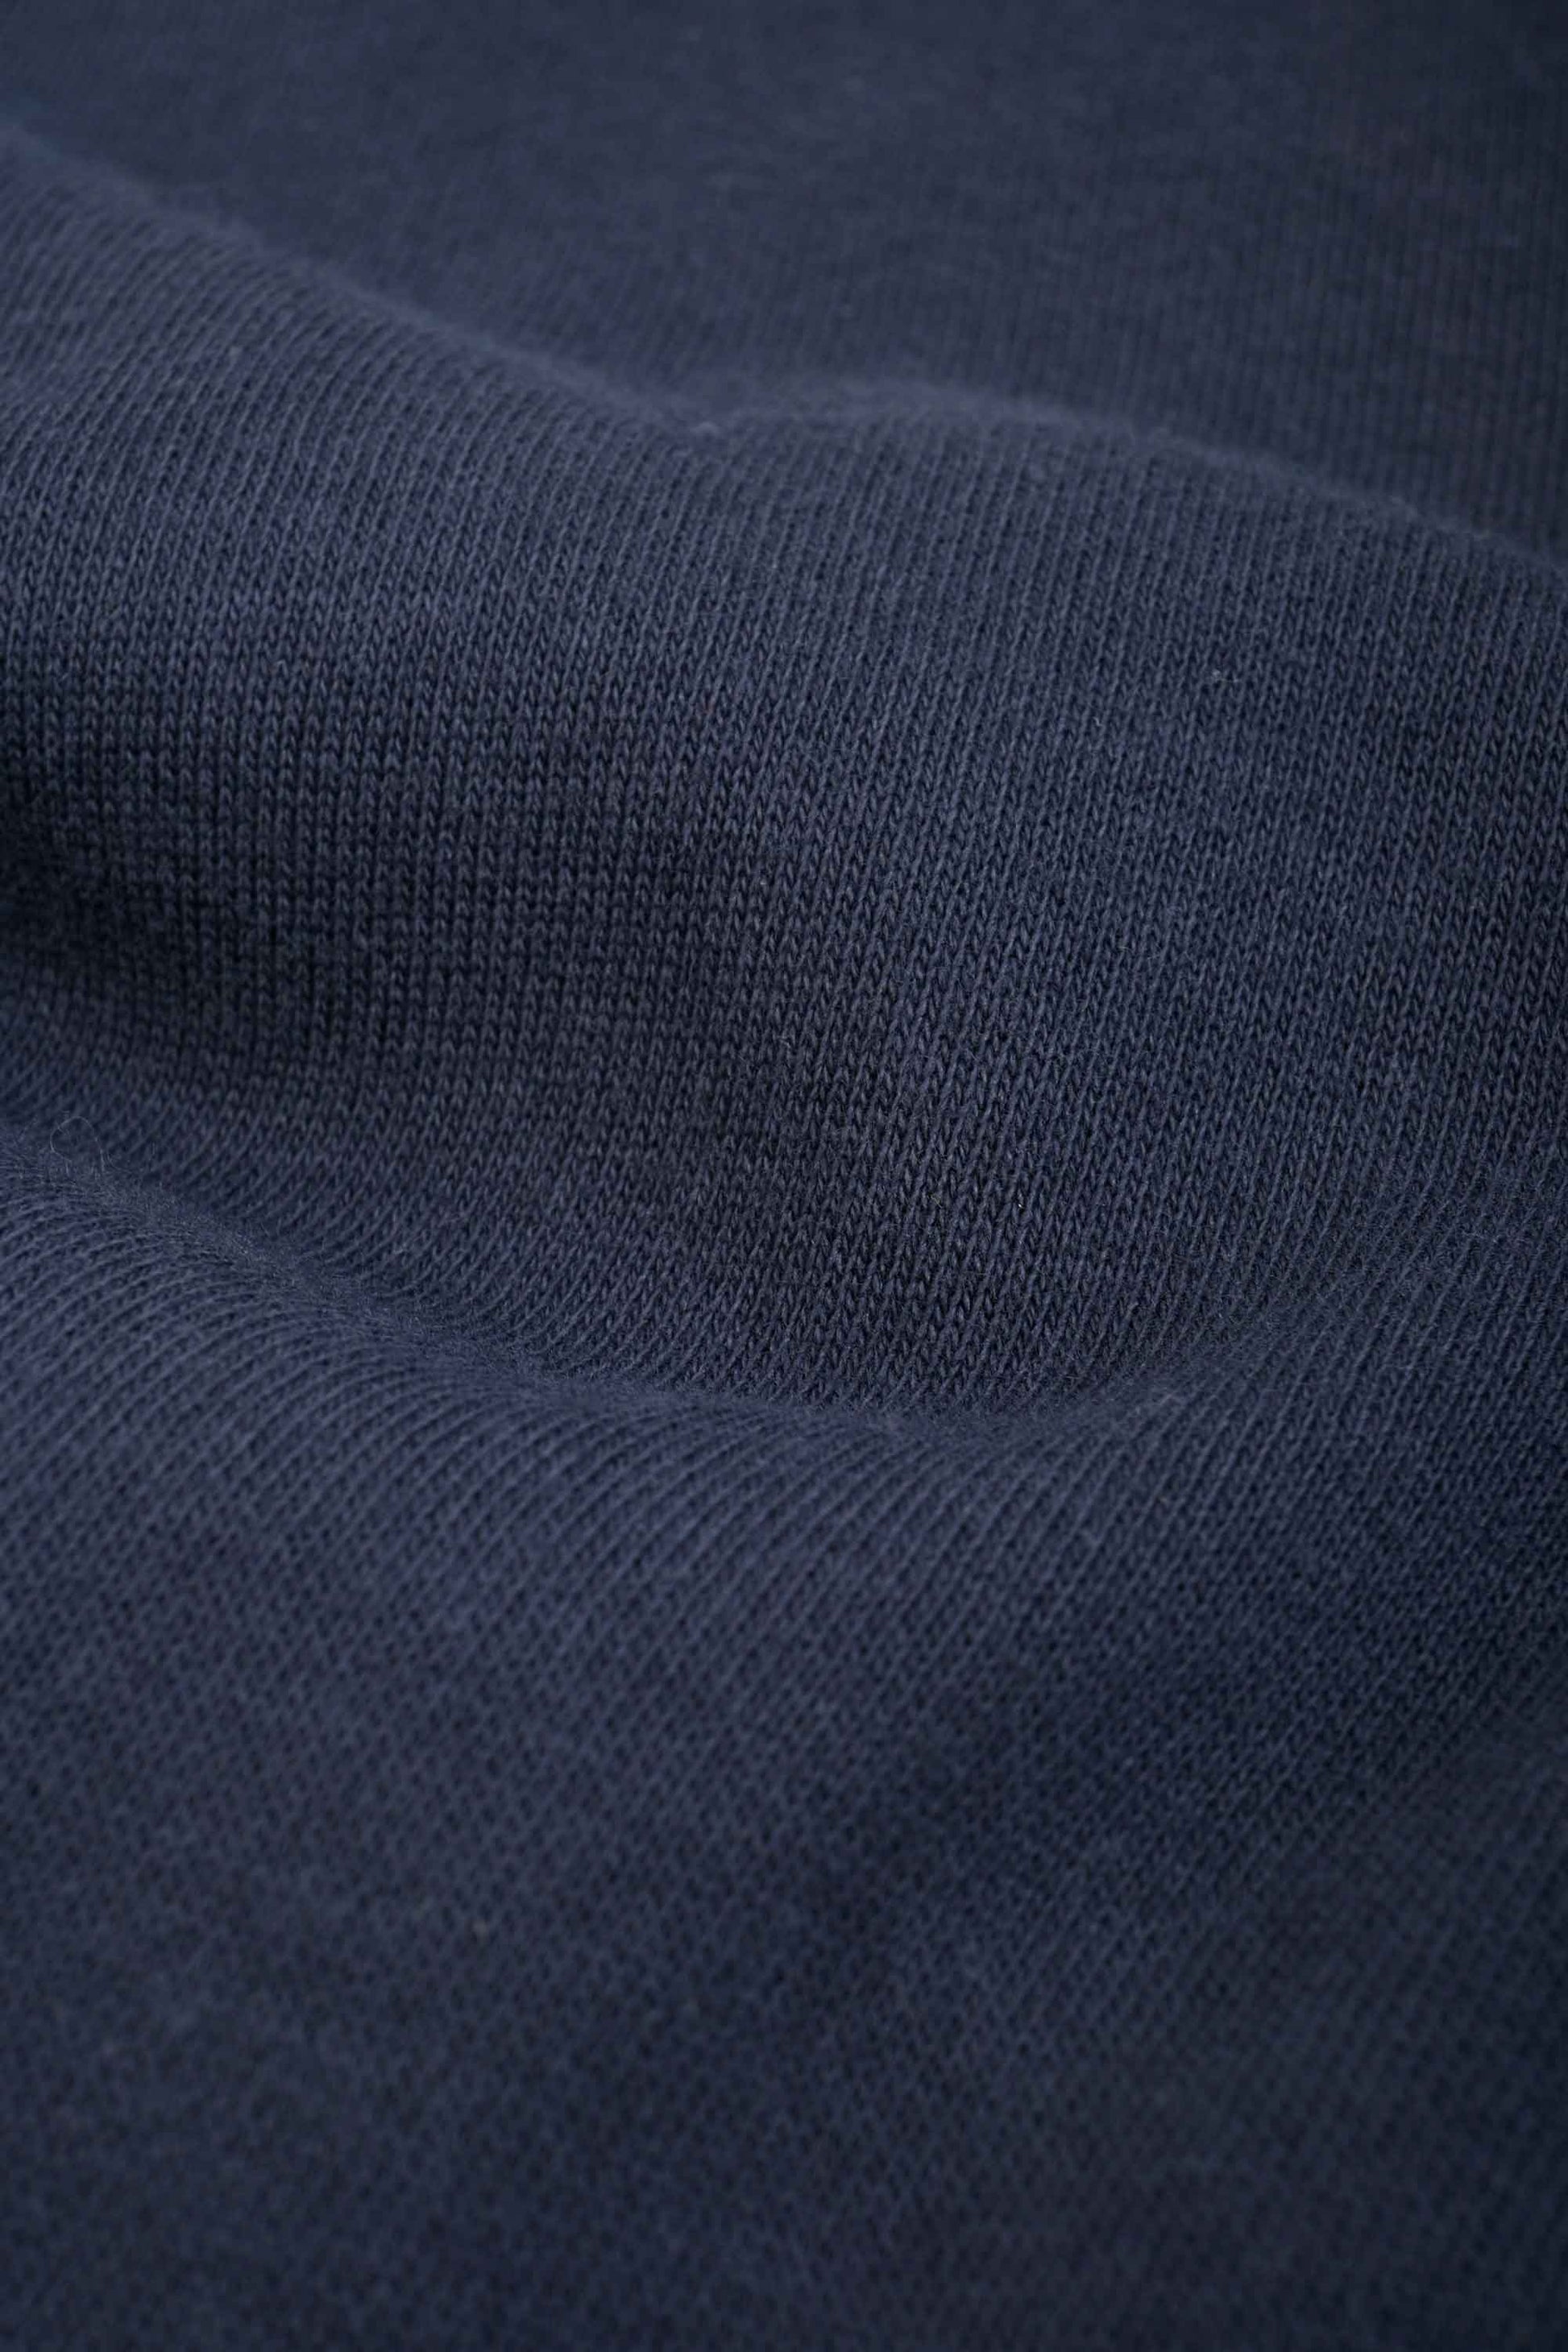 Max 21 Men's Star Logo Embroidered Quarter Zipper Sweat Shirt Men's Sweat Shirt SZK 